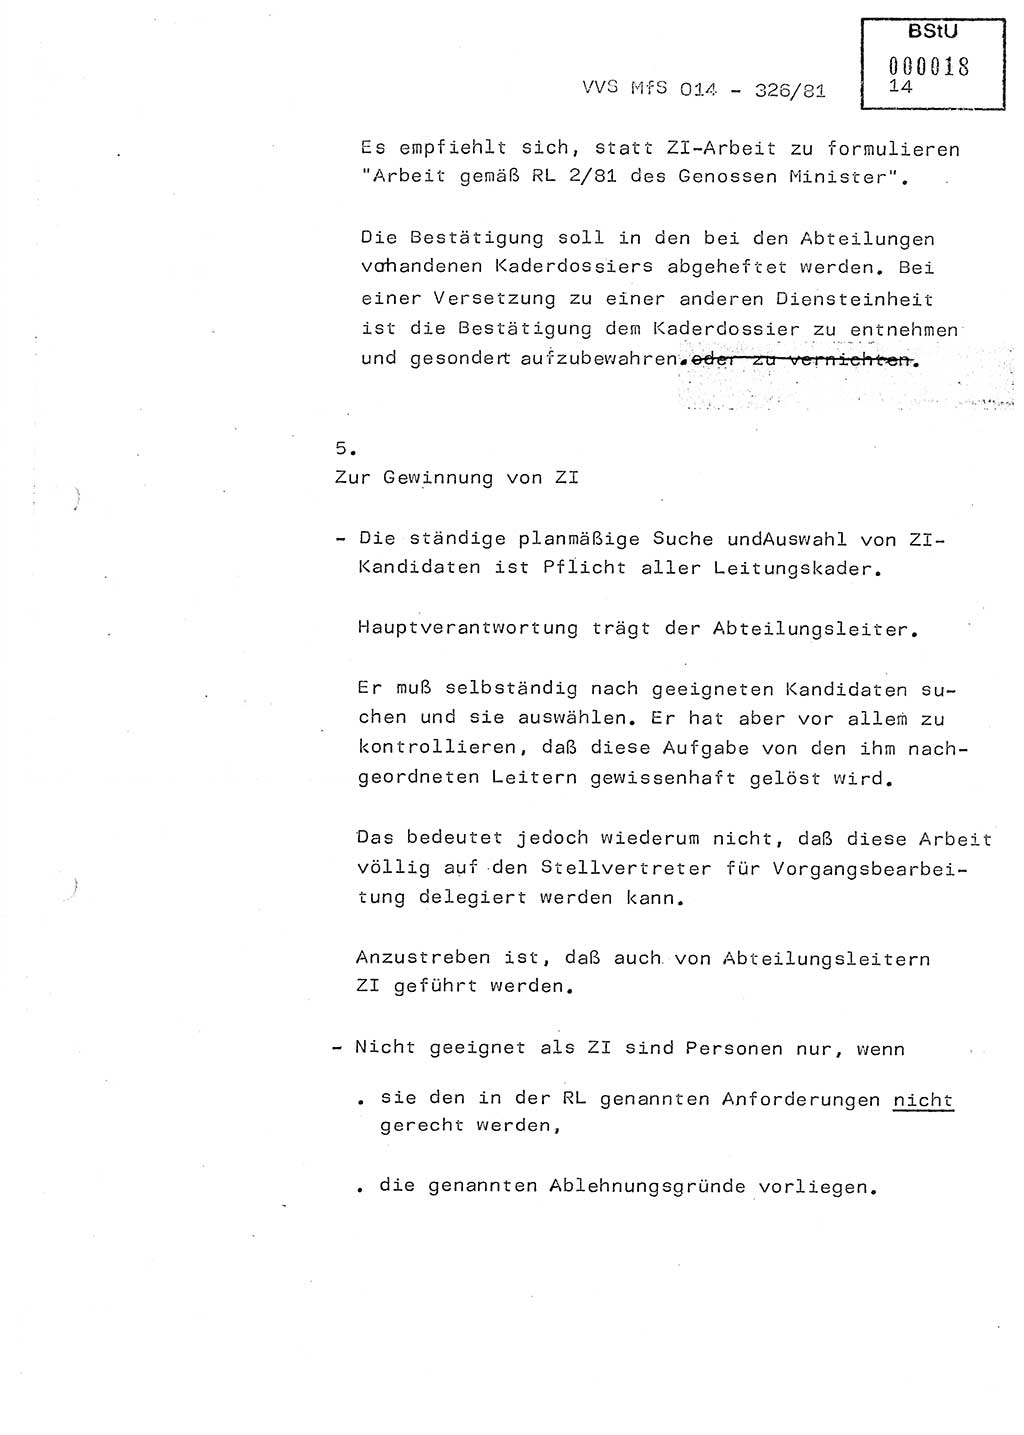 Thesen zum Einführungsvortrag für die Schulung zur Richtlinie Nr. 2/81 [zur Arbeit mit Zelleninformatoren (ZI)] des Genossen Minister (Generaloberst Erich Mielke), Ministerium für Staatssicherheit (MfS) [Deutsche Demokratische Republik (DDR)], Hauptabteilung (HA) Ⅸ, Vertrauliche Verschlußsache (VVS) 014-326/81, Berlin 1981, Seite 14 (Th. Sch. RL 2/81 MfS DDR HA Ⅸ VVS 014-326/81 1981, S. 14)